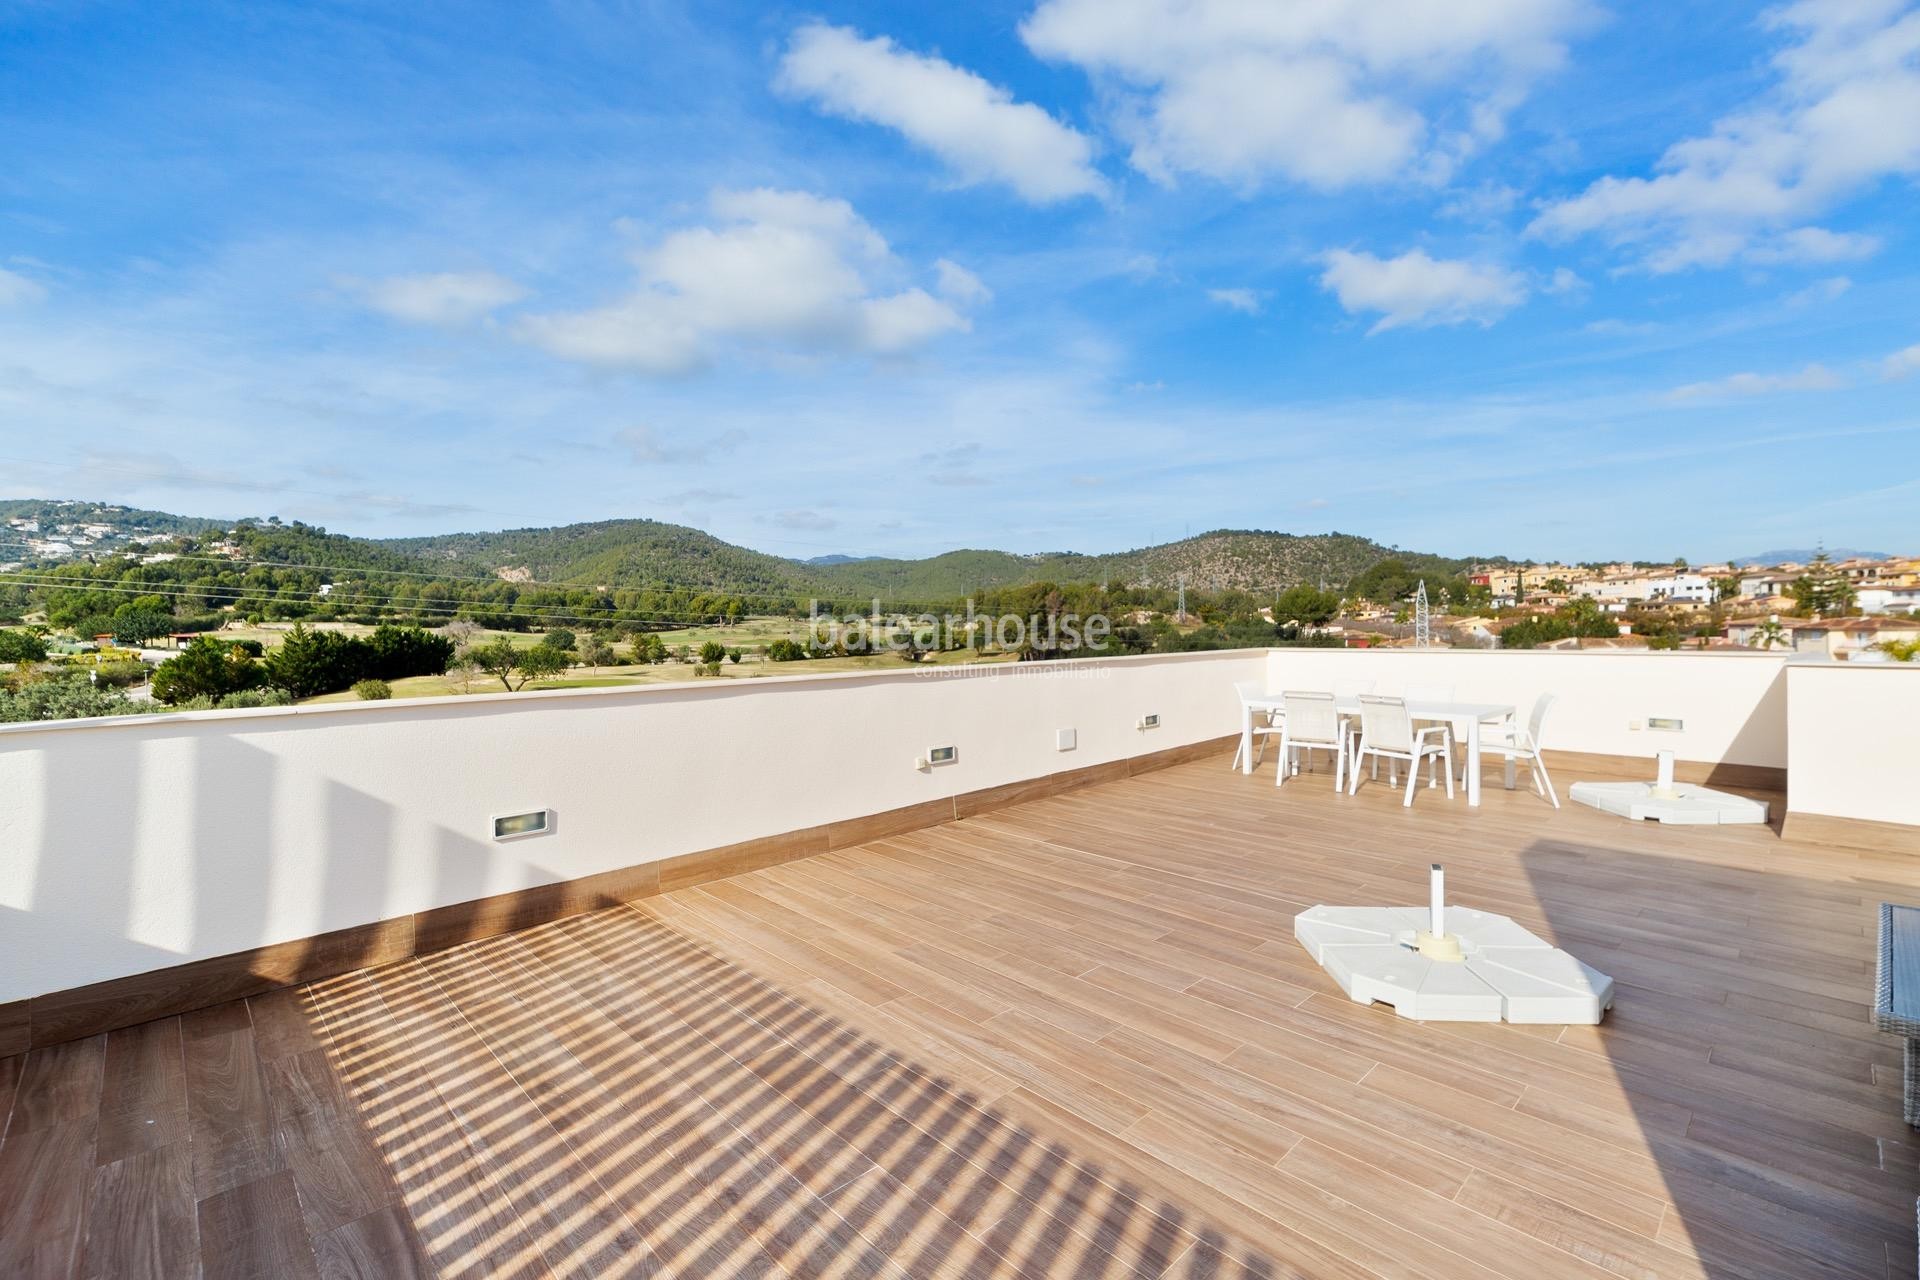 Fabuloso ático con vistas al golf, solárium y piscina privada dentro de un cuidado complejo en Palma